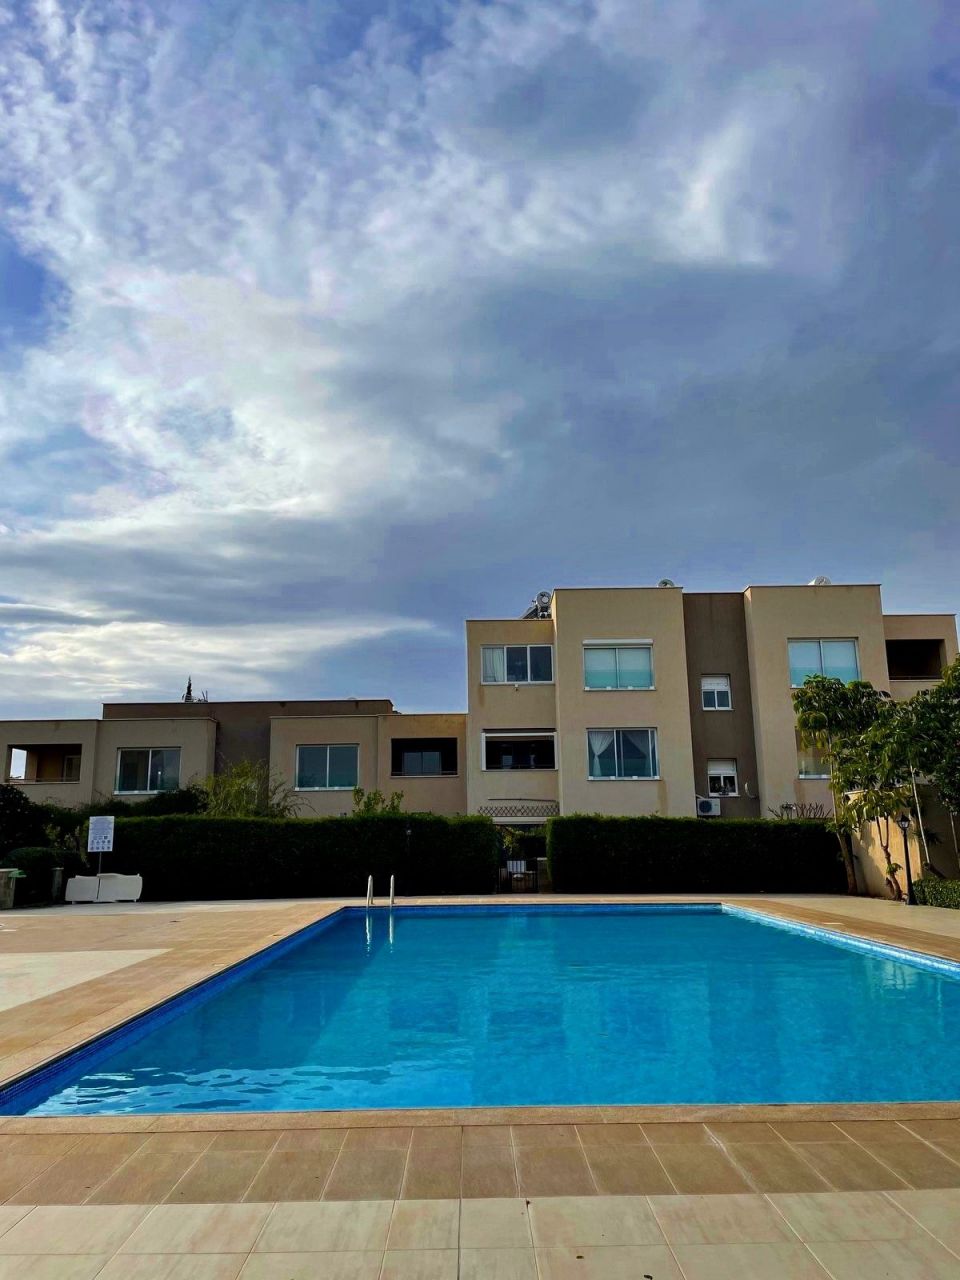 Apartamento en Pafos, Chipre - imagen 1